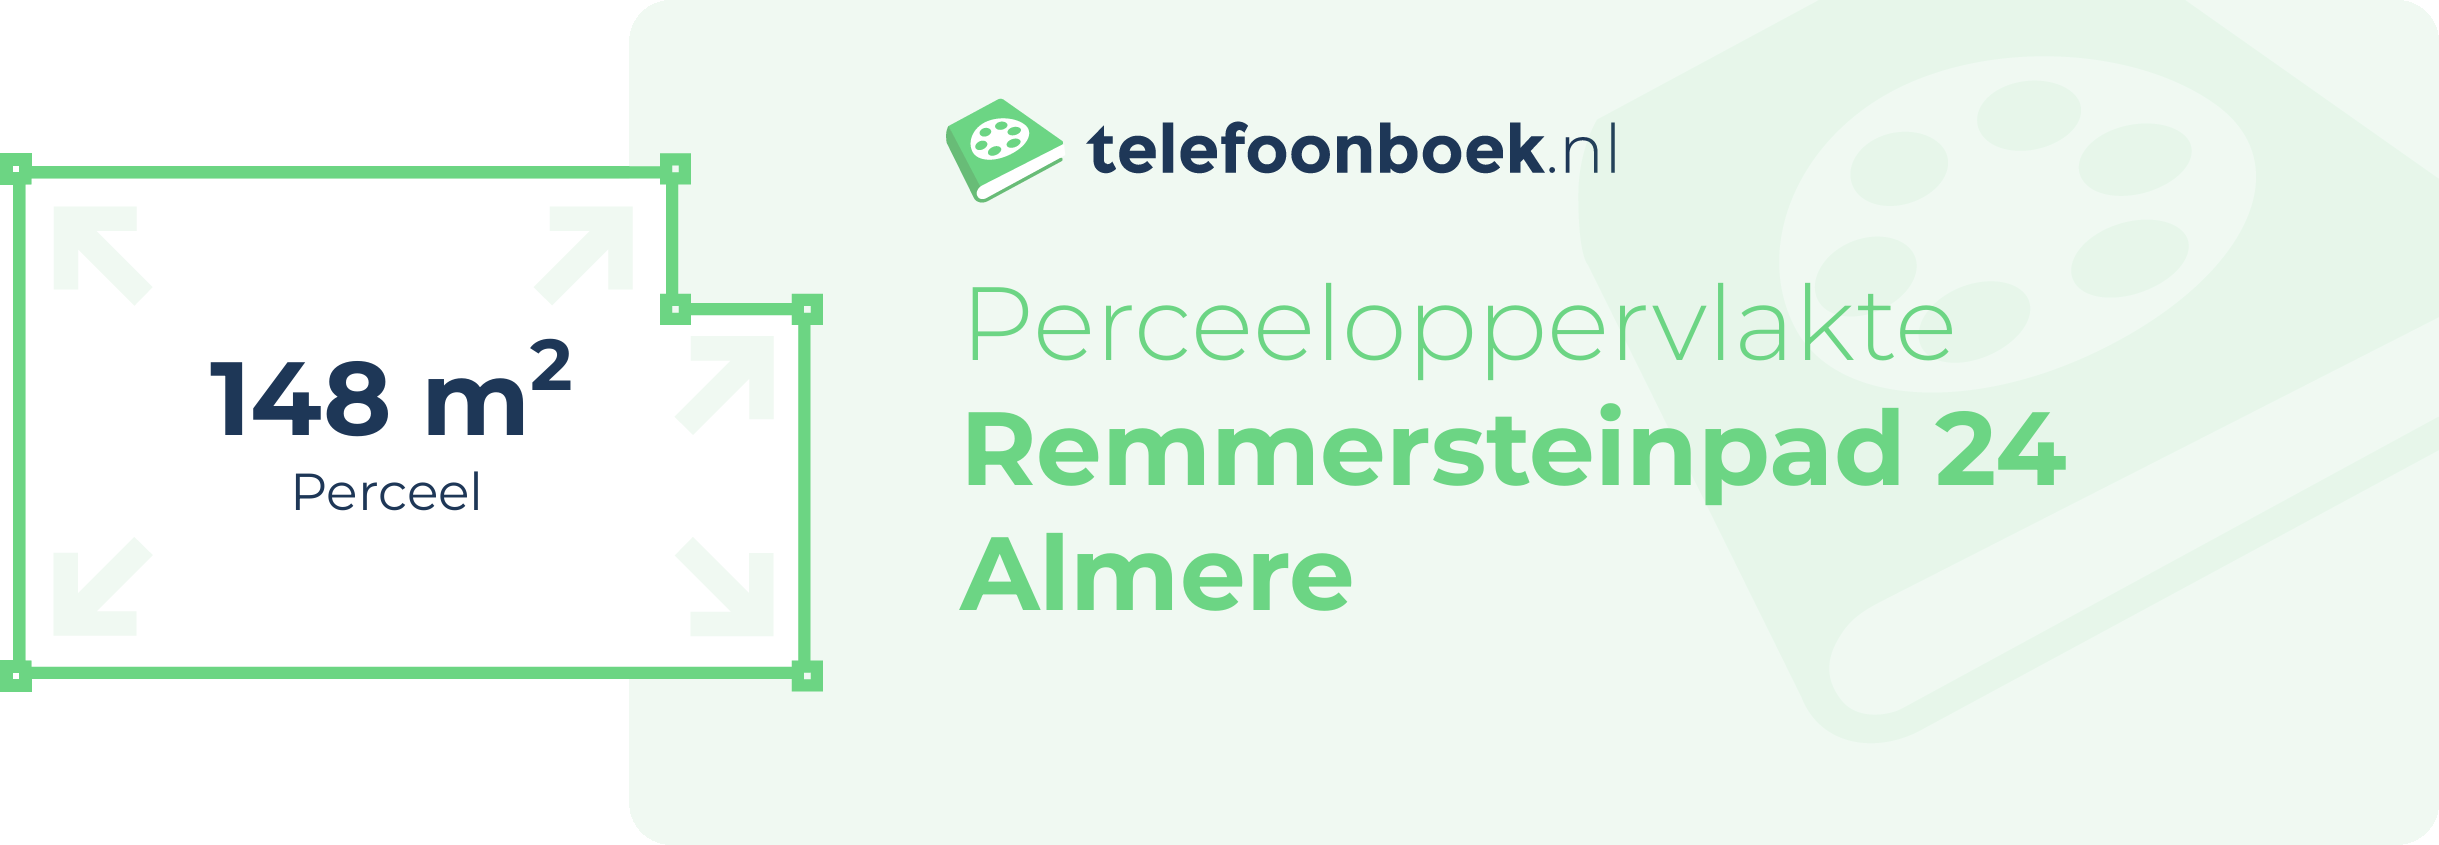 Perceeloppervlakte Remmersteinpad 24 Almere